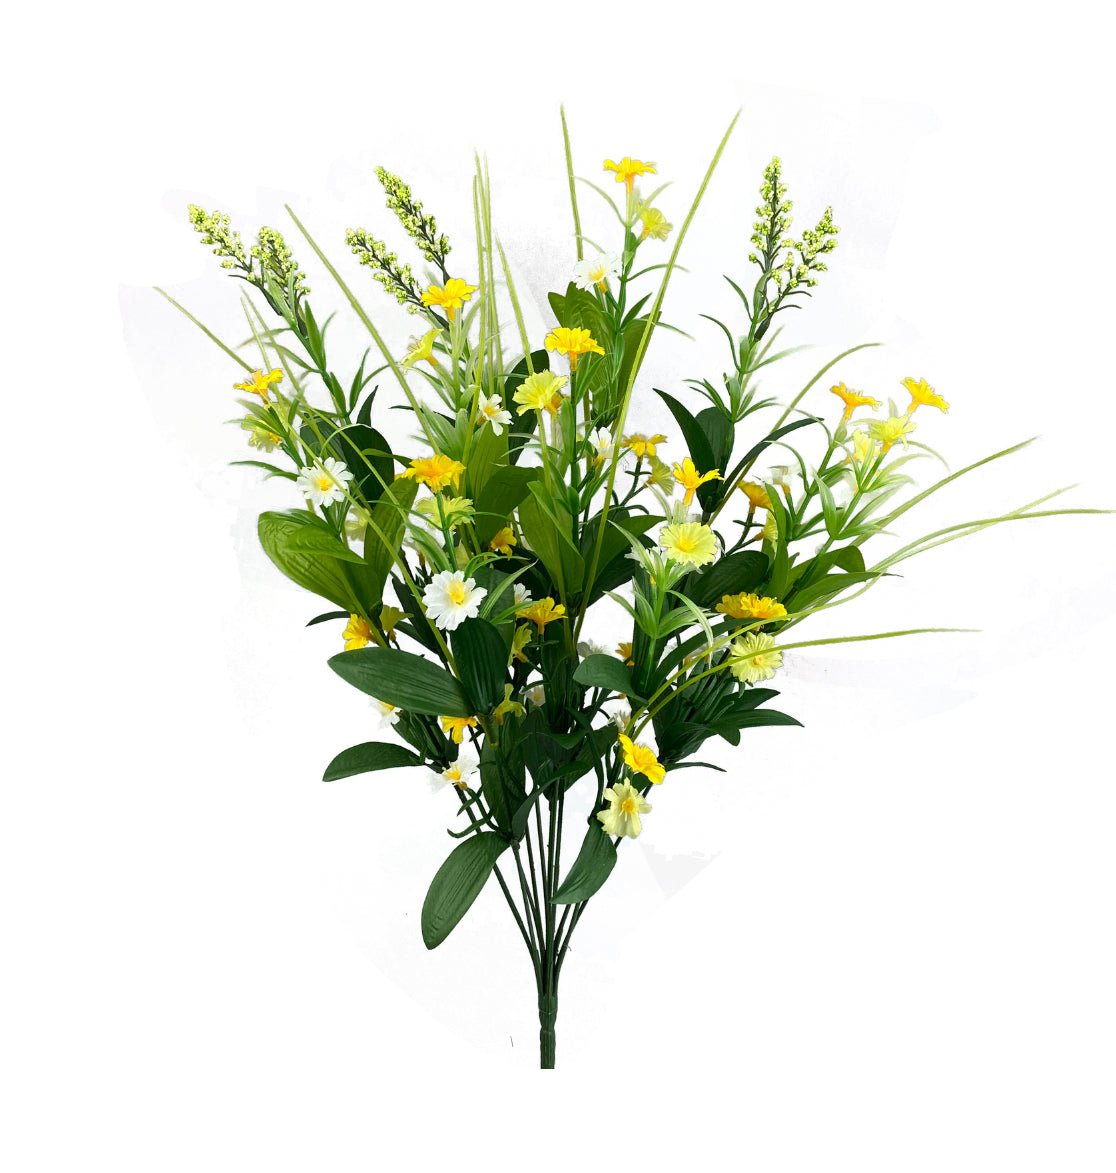 Astilbe wildflower filler bush - Greenery Marketartificial flowers63379CMYW